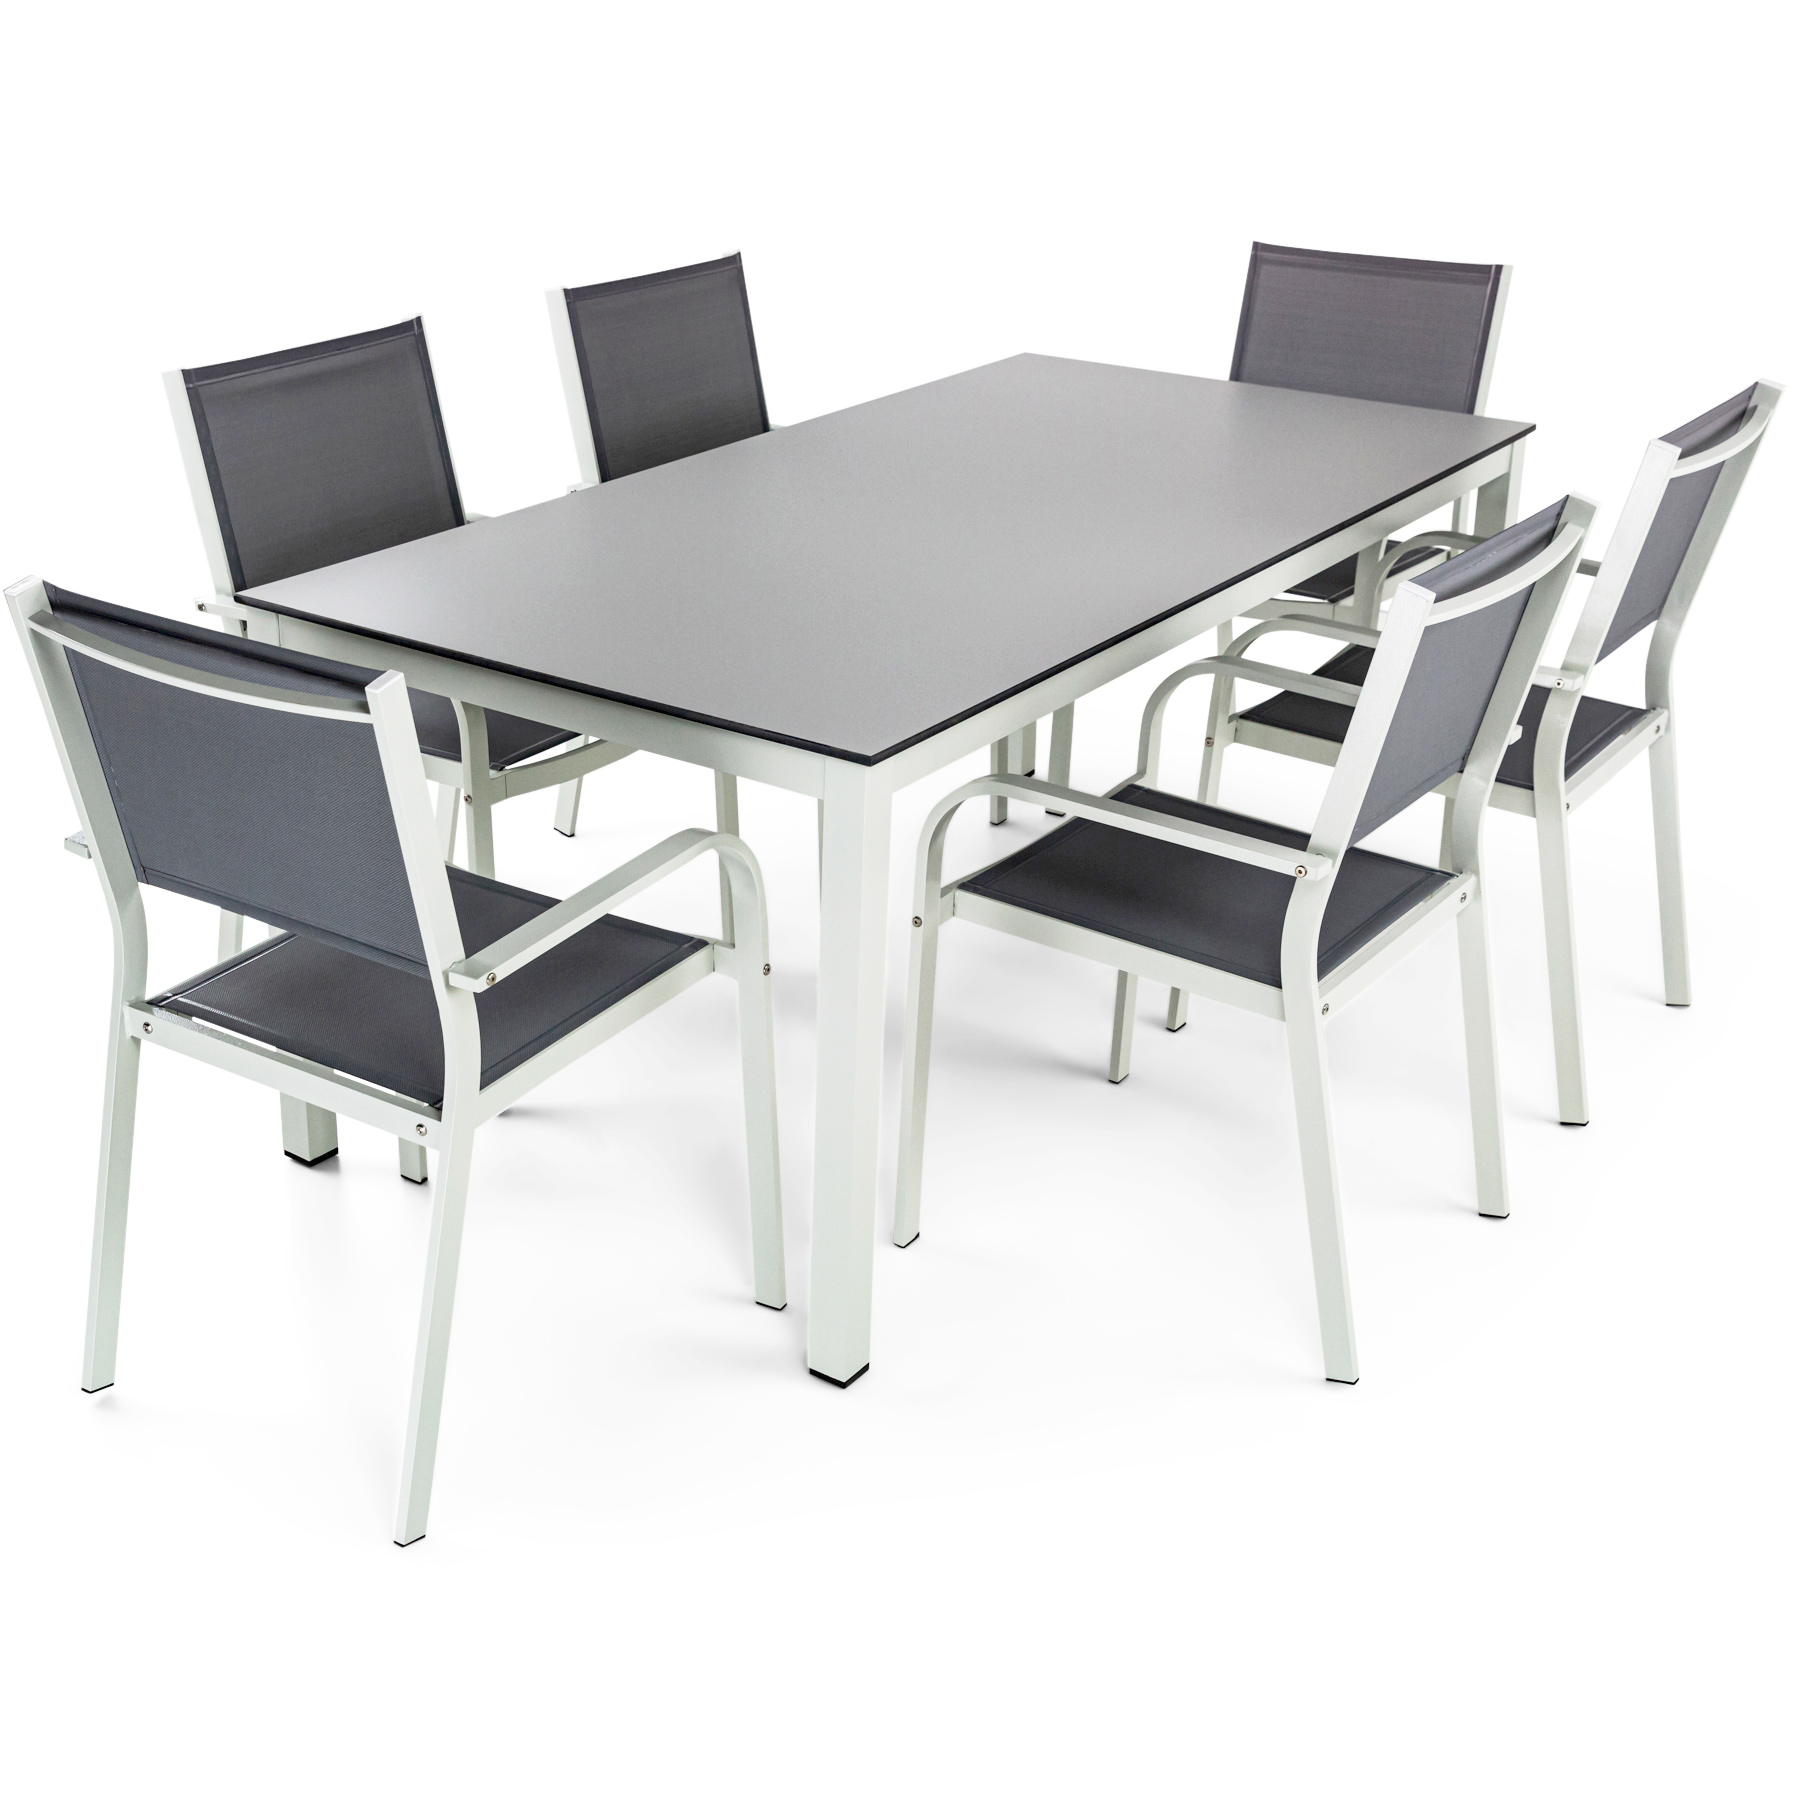 Underhållsfria utemöbler i högtryckslaminat & aluminium | Bord & 6 stolar